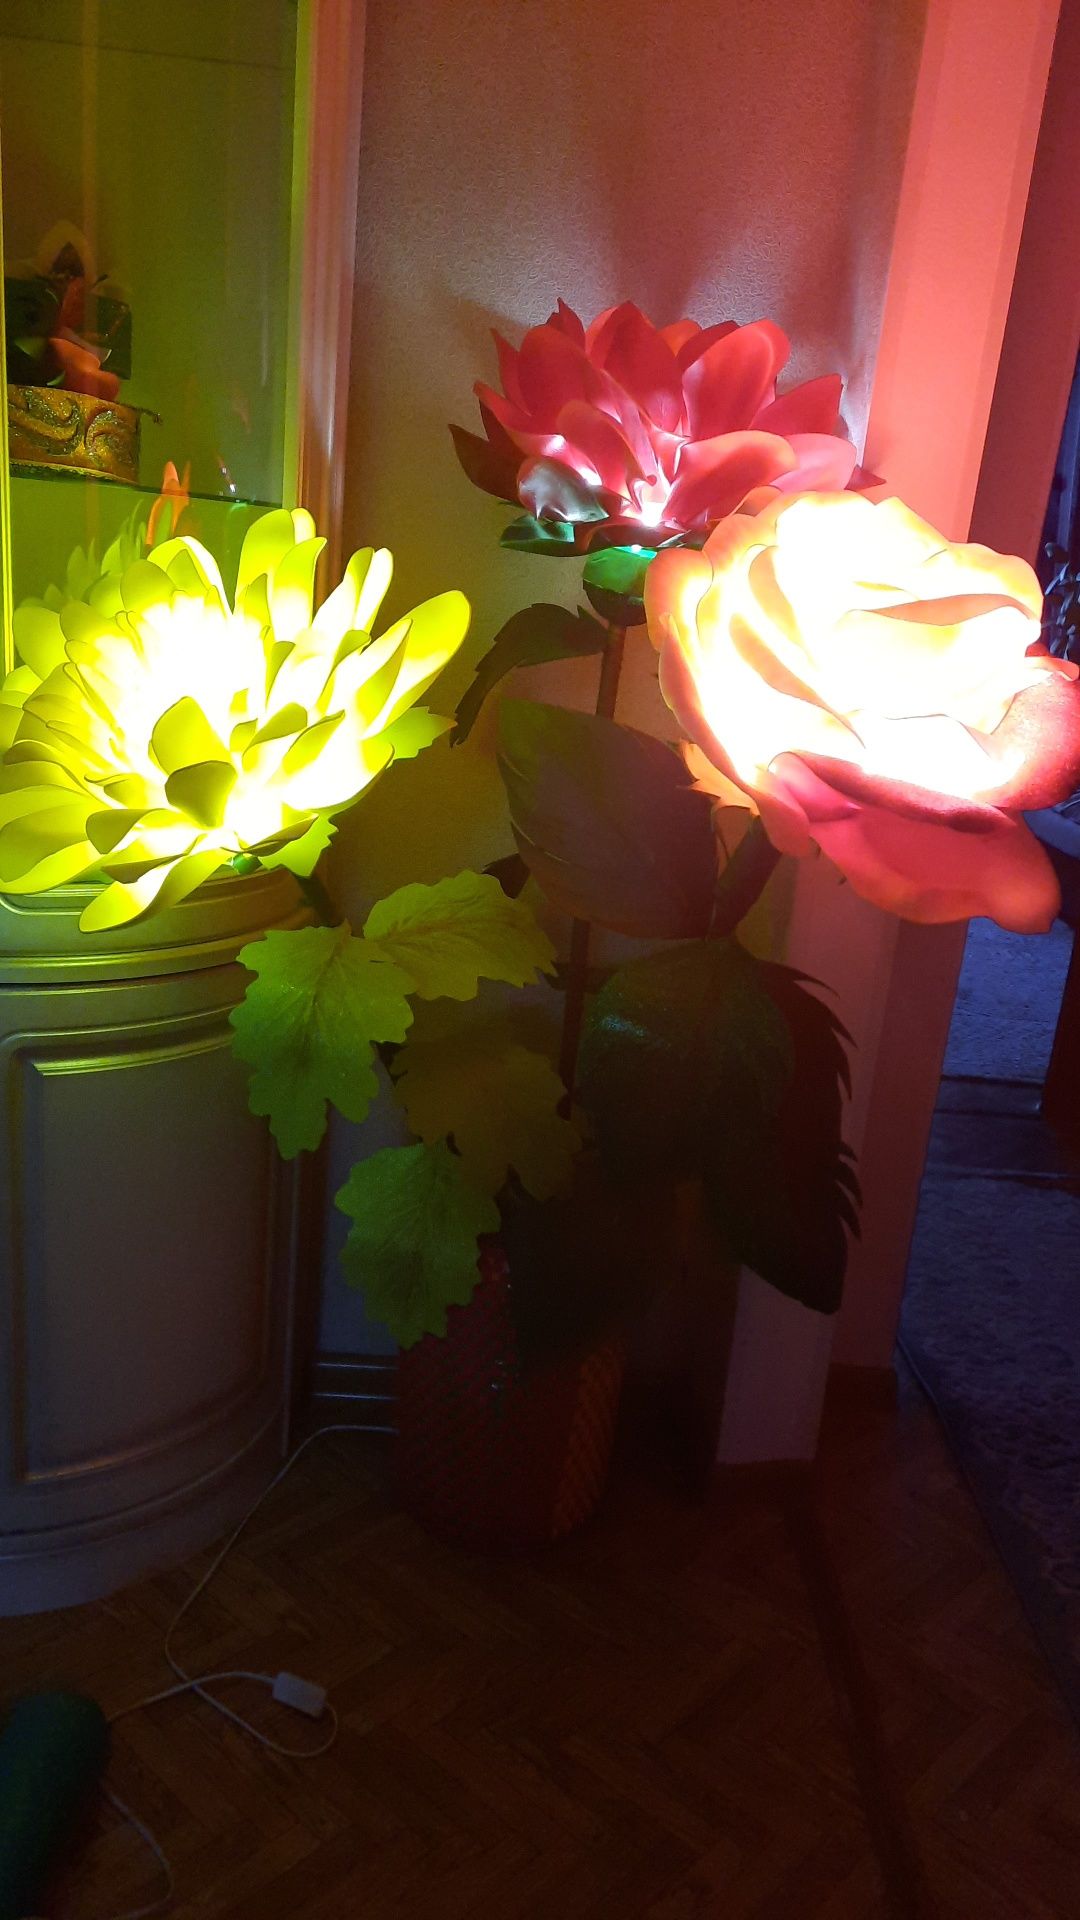 Светильники и цветы в горшке, 3 д картинки